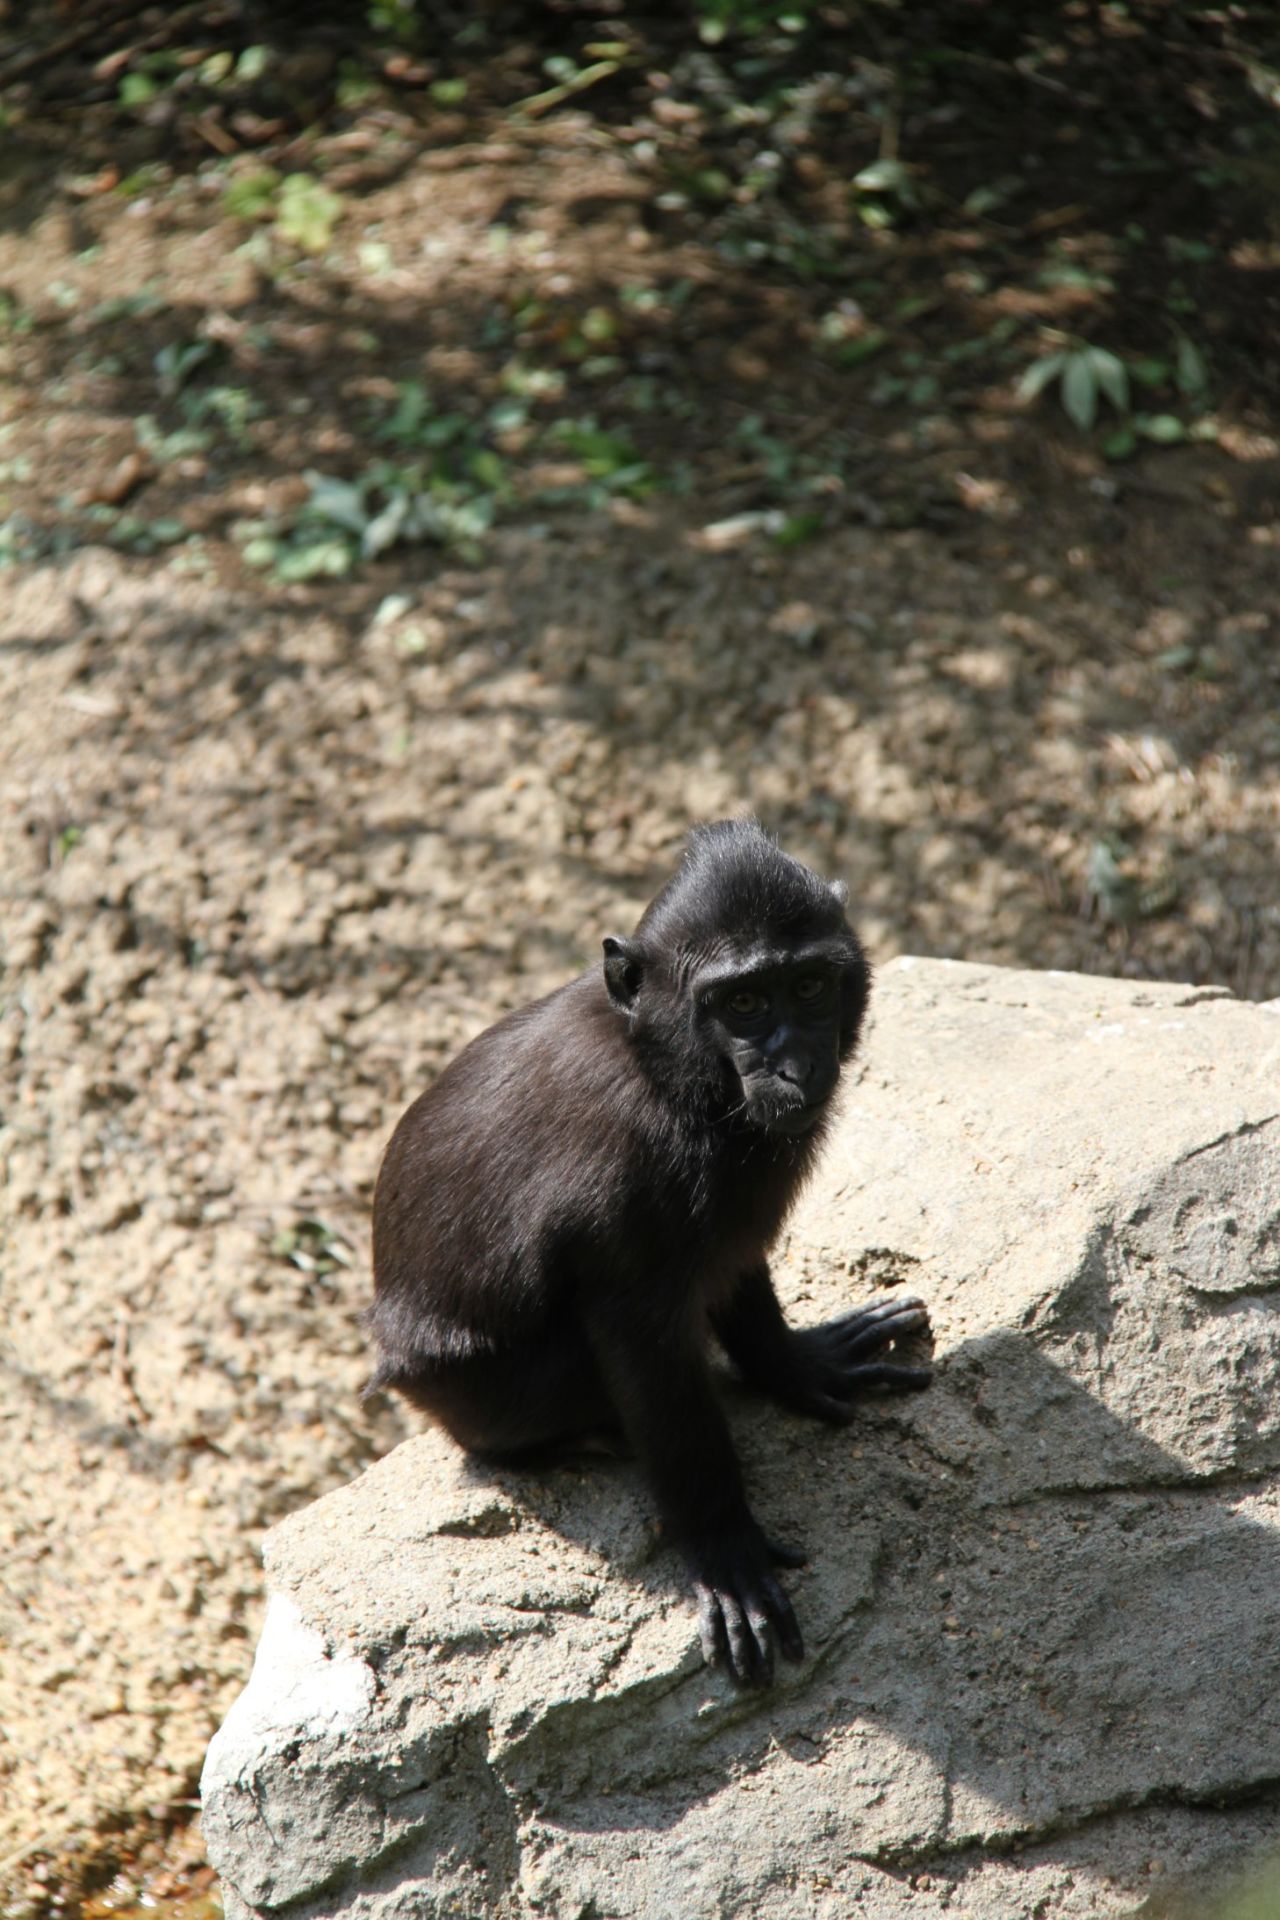 Zimm the Memphis monkey back in zoo | CNN